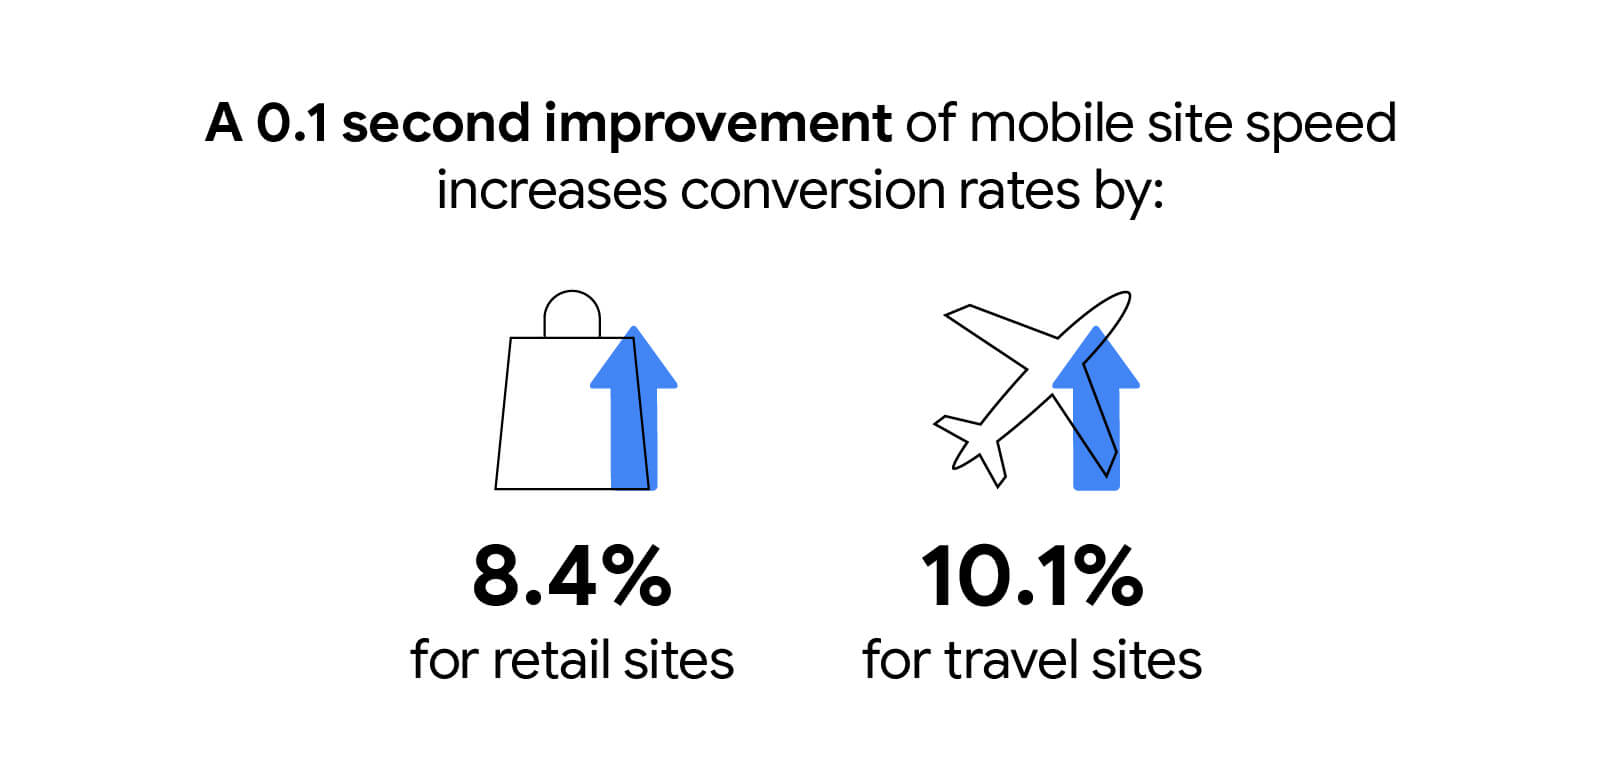 Uma melhoria de 0,1 segundo na velocidade do site móvel aumenta as taxas de conversão em 8,4% para sites de varejo e 10,1% para sites de viagens.